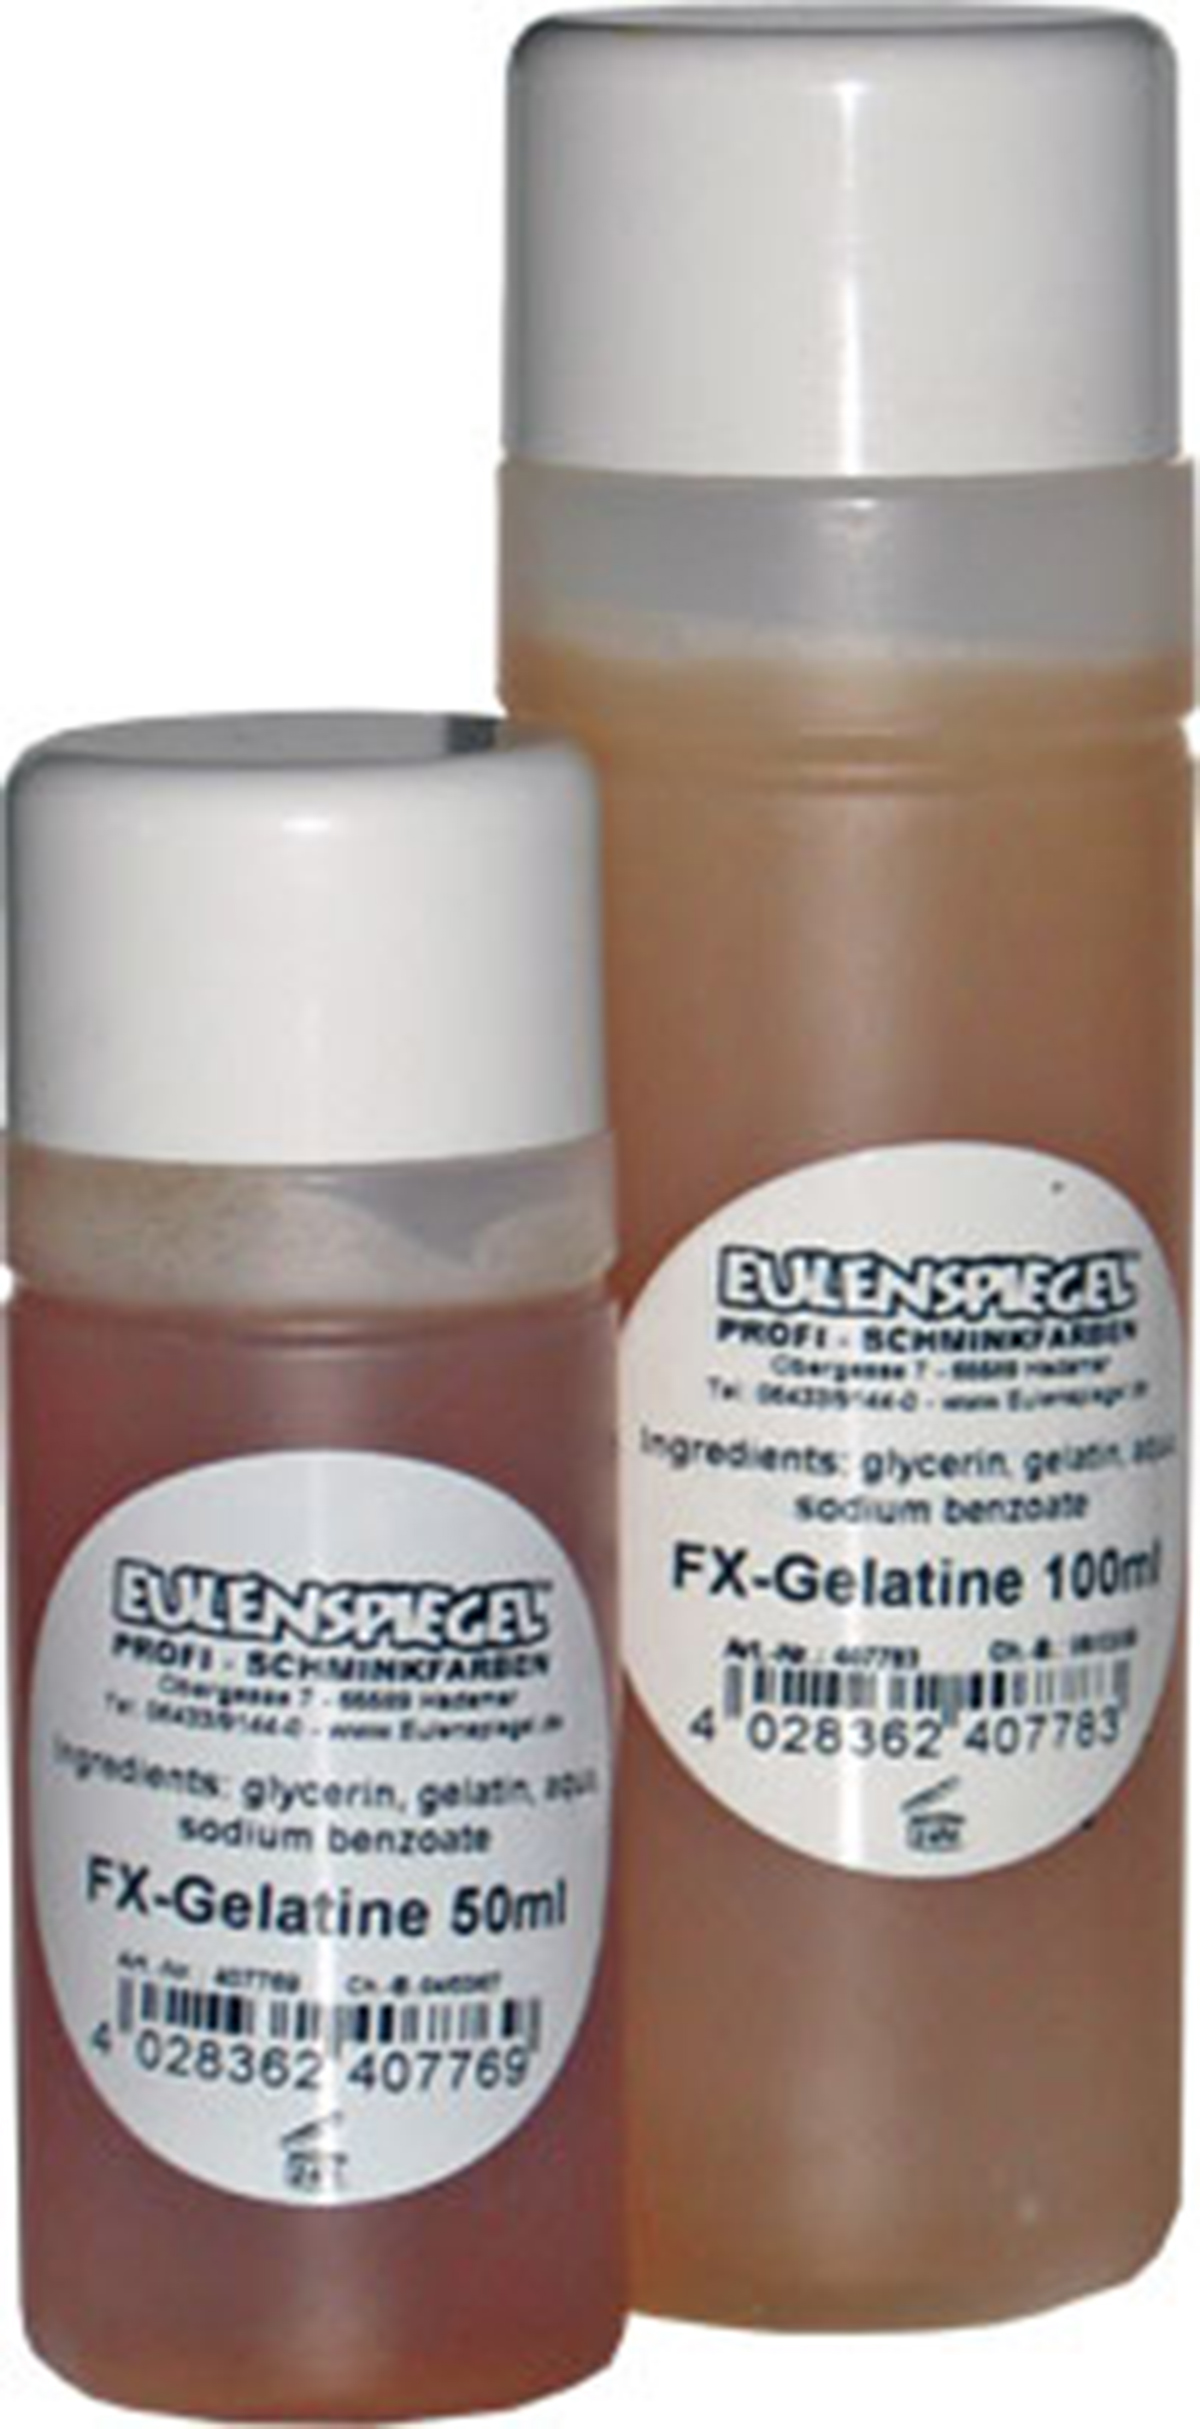 FX-Gelatine, 100ml Eulenspiegel FX, in Flasche